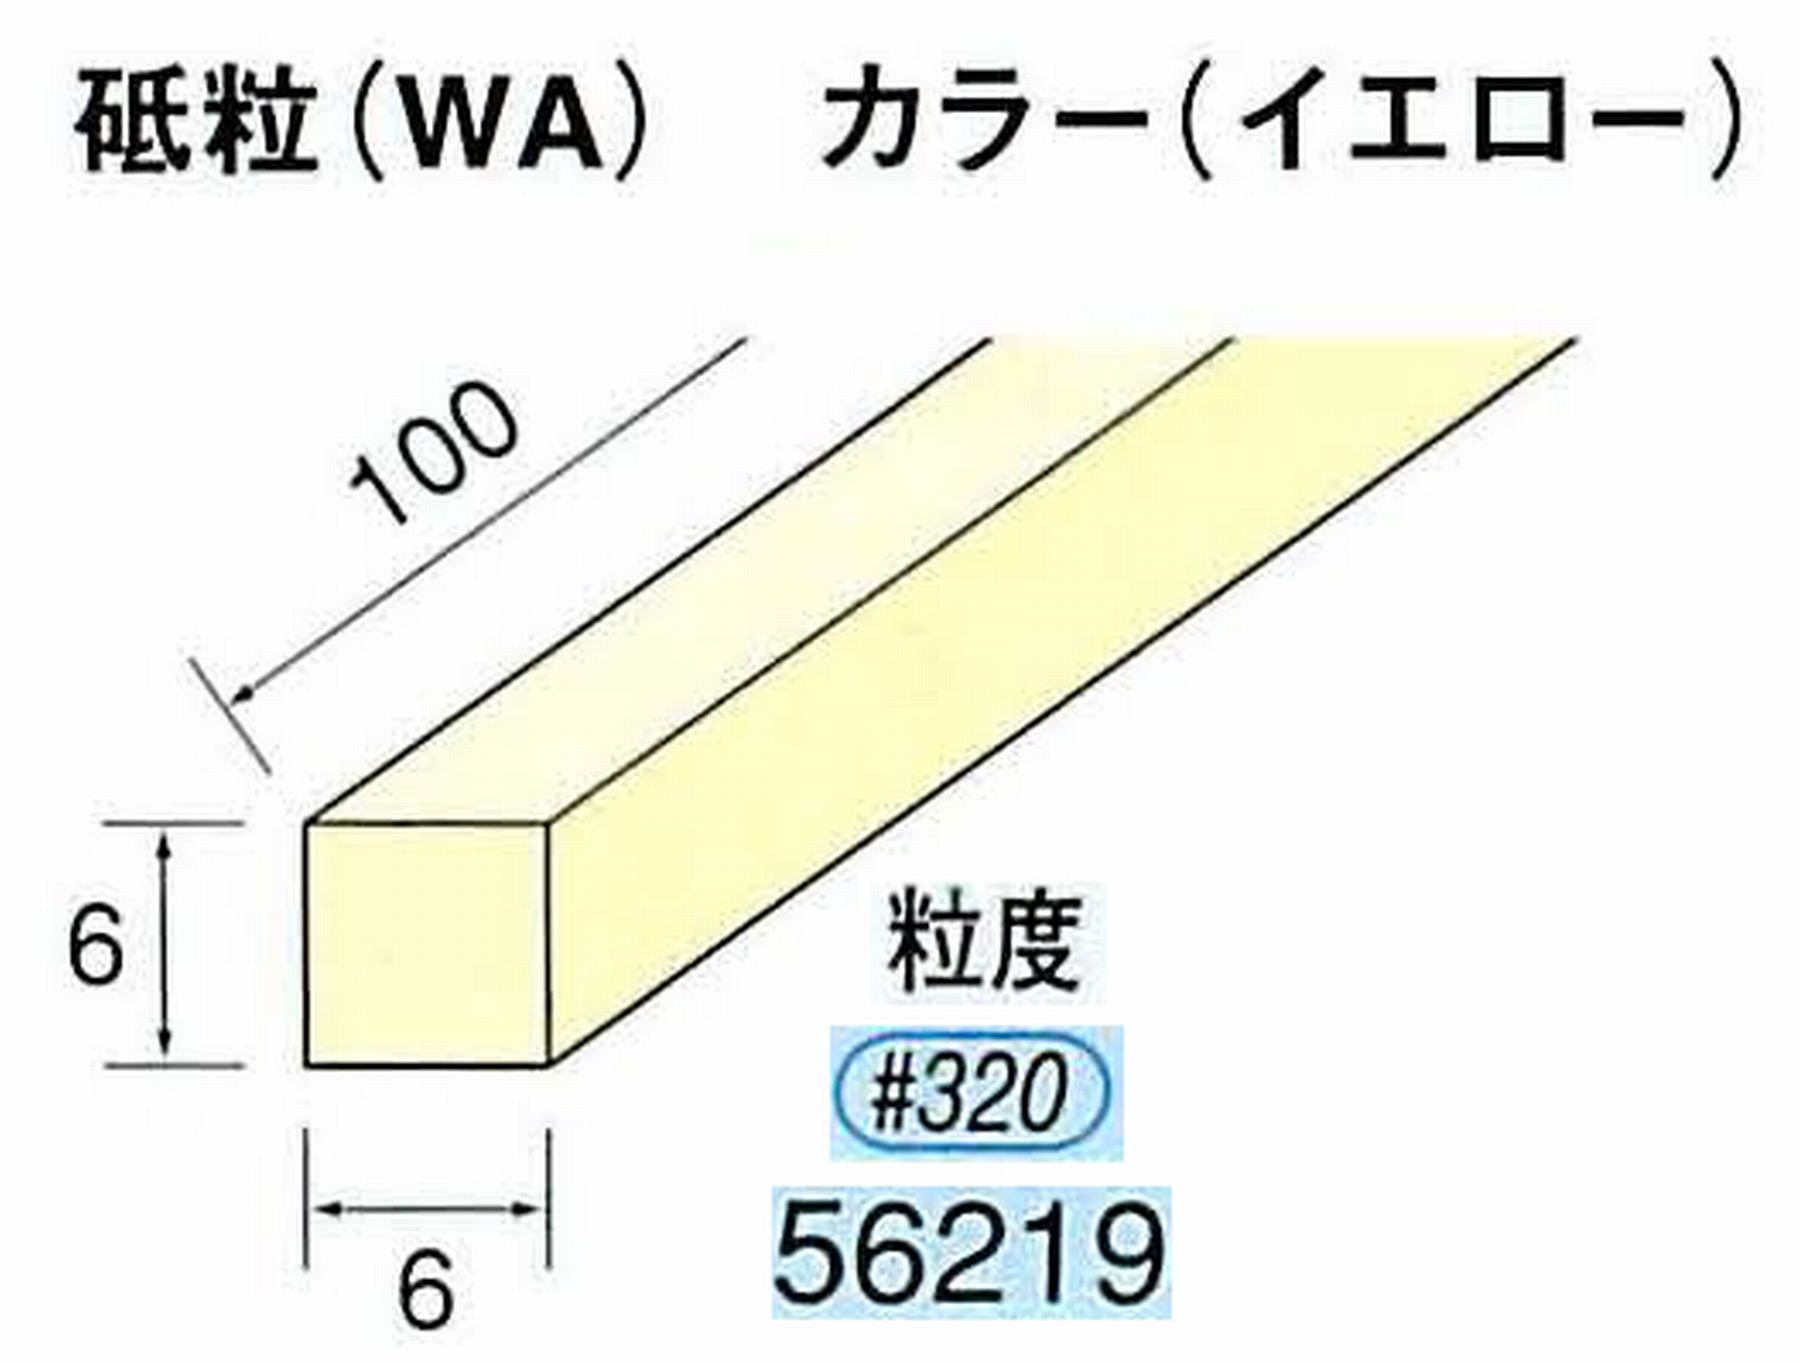 ナカニシ/NAKANISHI スティック砥石 イエロー・フィニッシュシリーズ 砥粒(WA) 56219